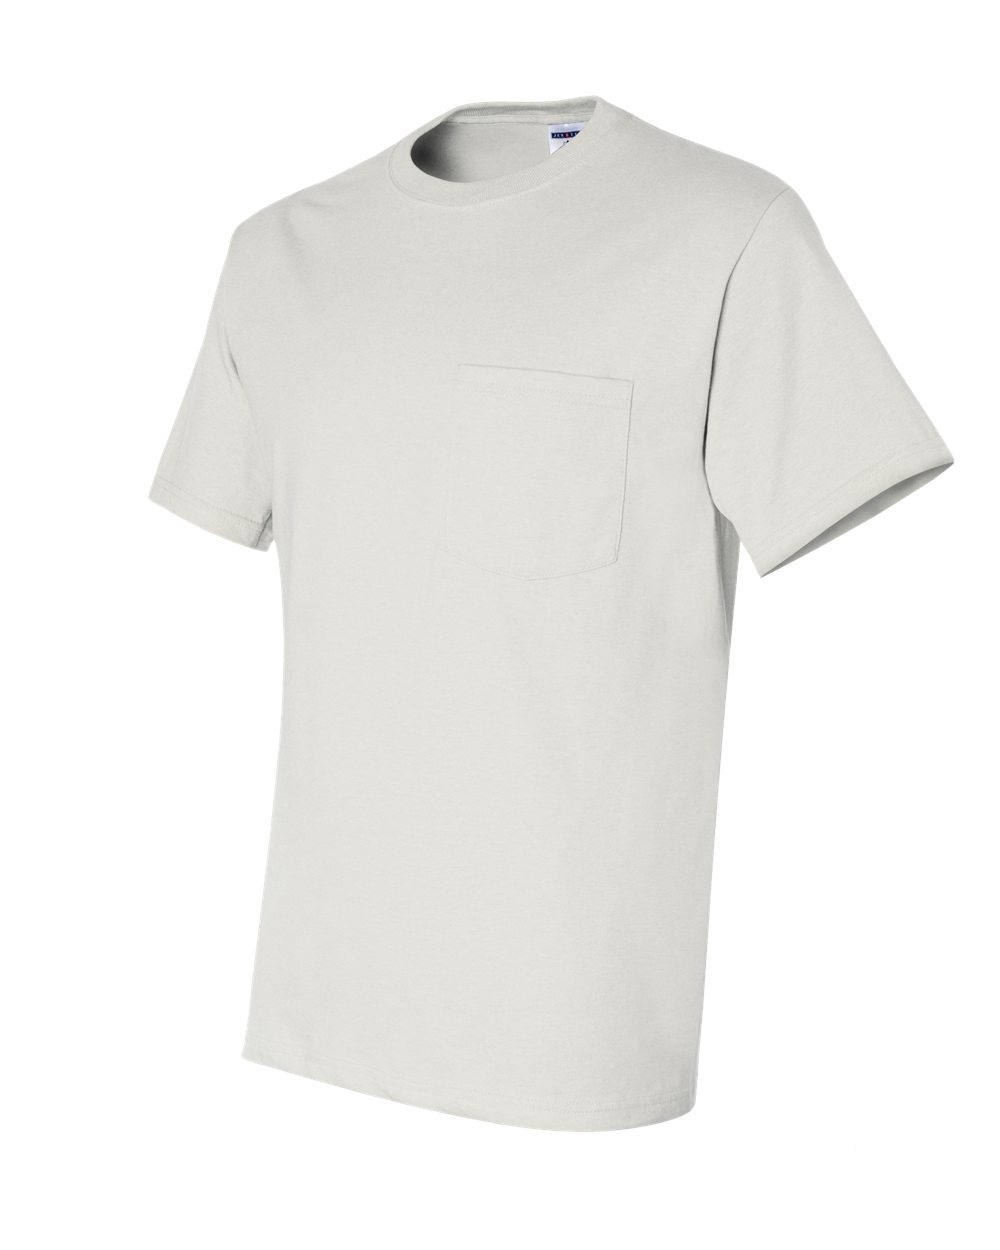 Jerzees 29MPR - Heavyweight Blend 50/50 T-Shirt with a Pocket